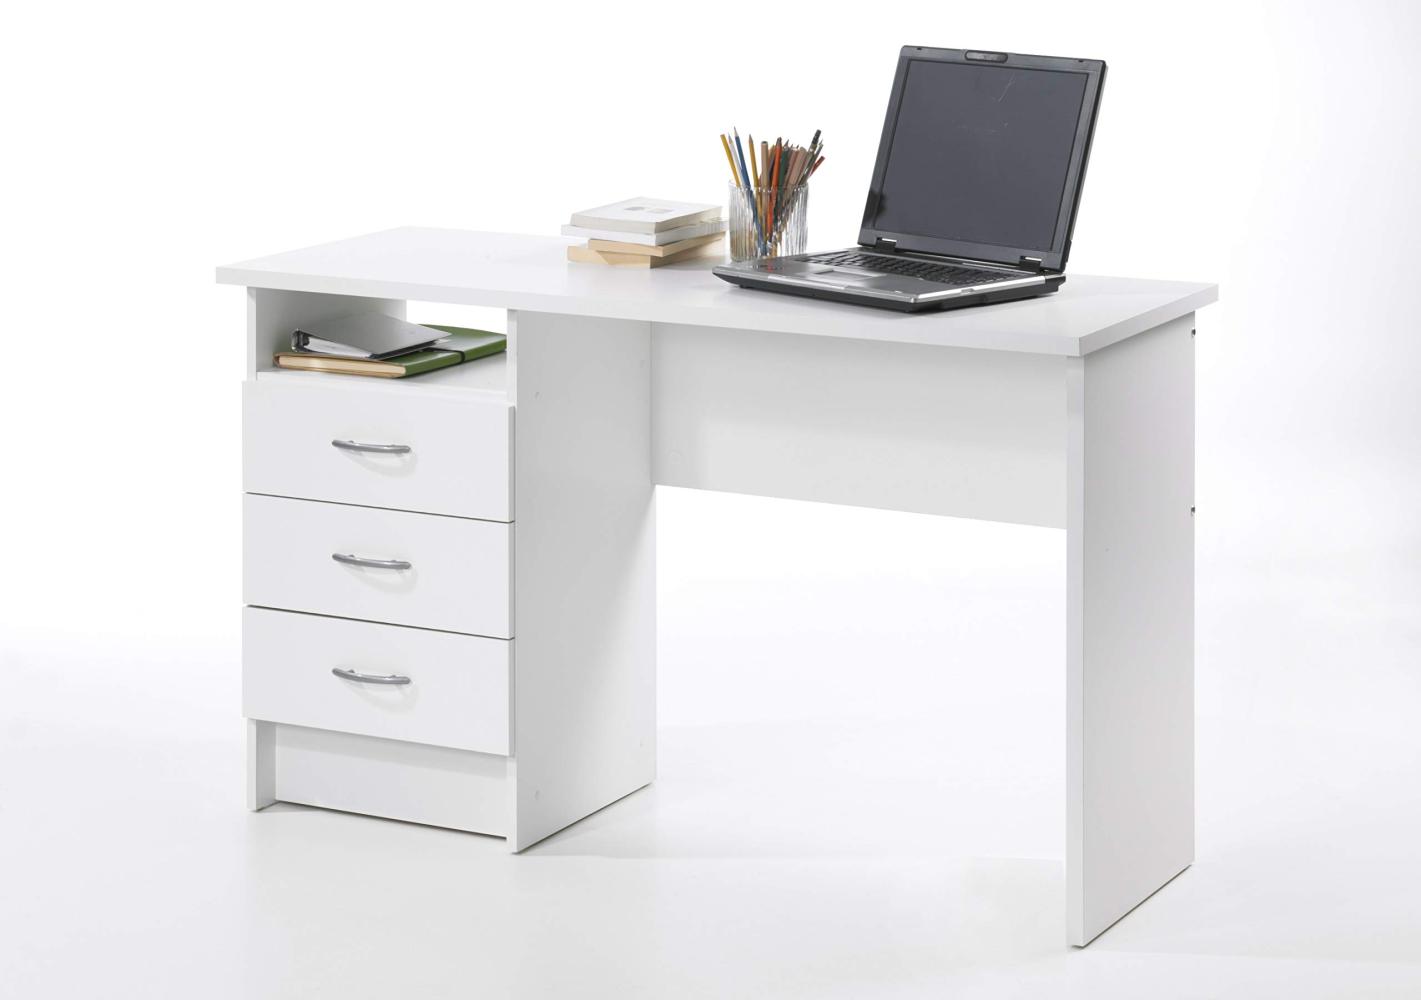 Dmora Linearer Schreibtisch mit drei Schubladen, weiße Farbe, Maße 120 x 72 x 48 cm Bild 1